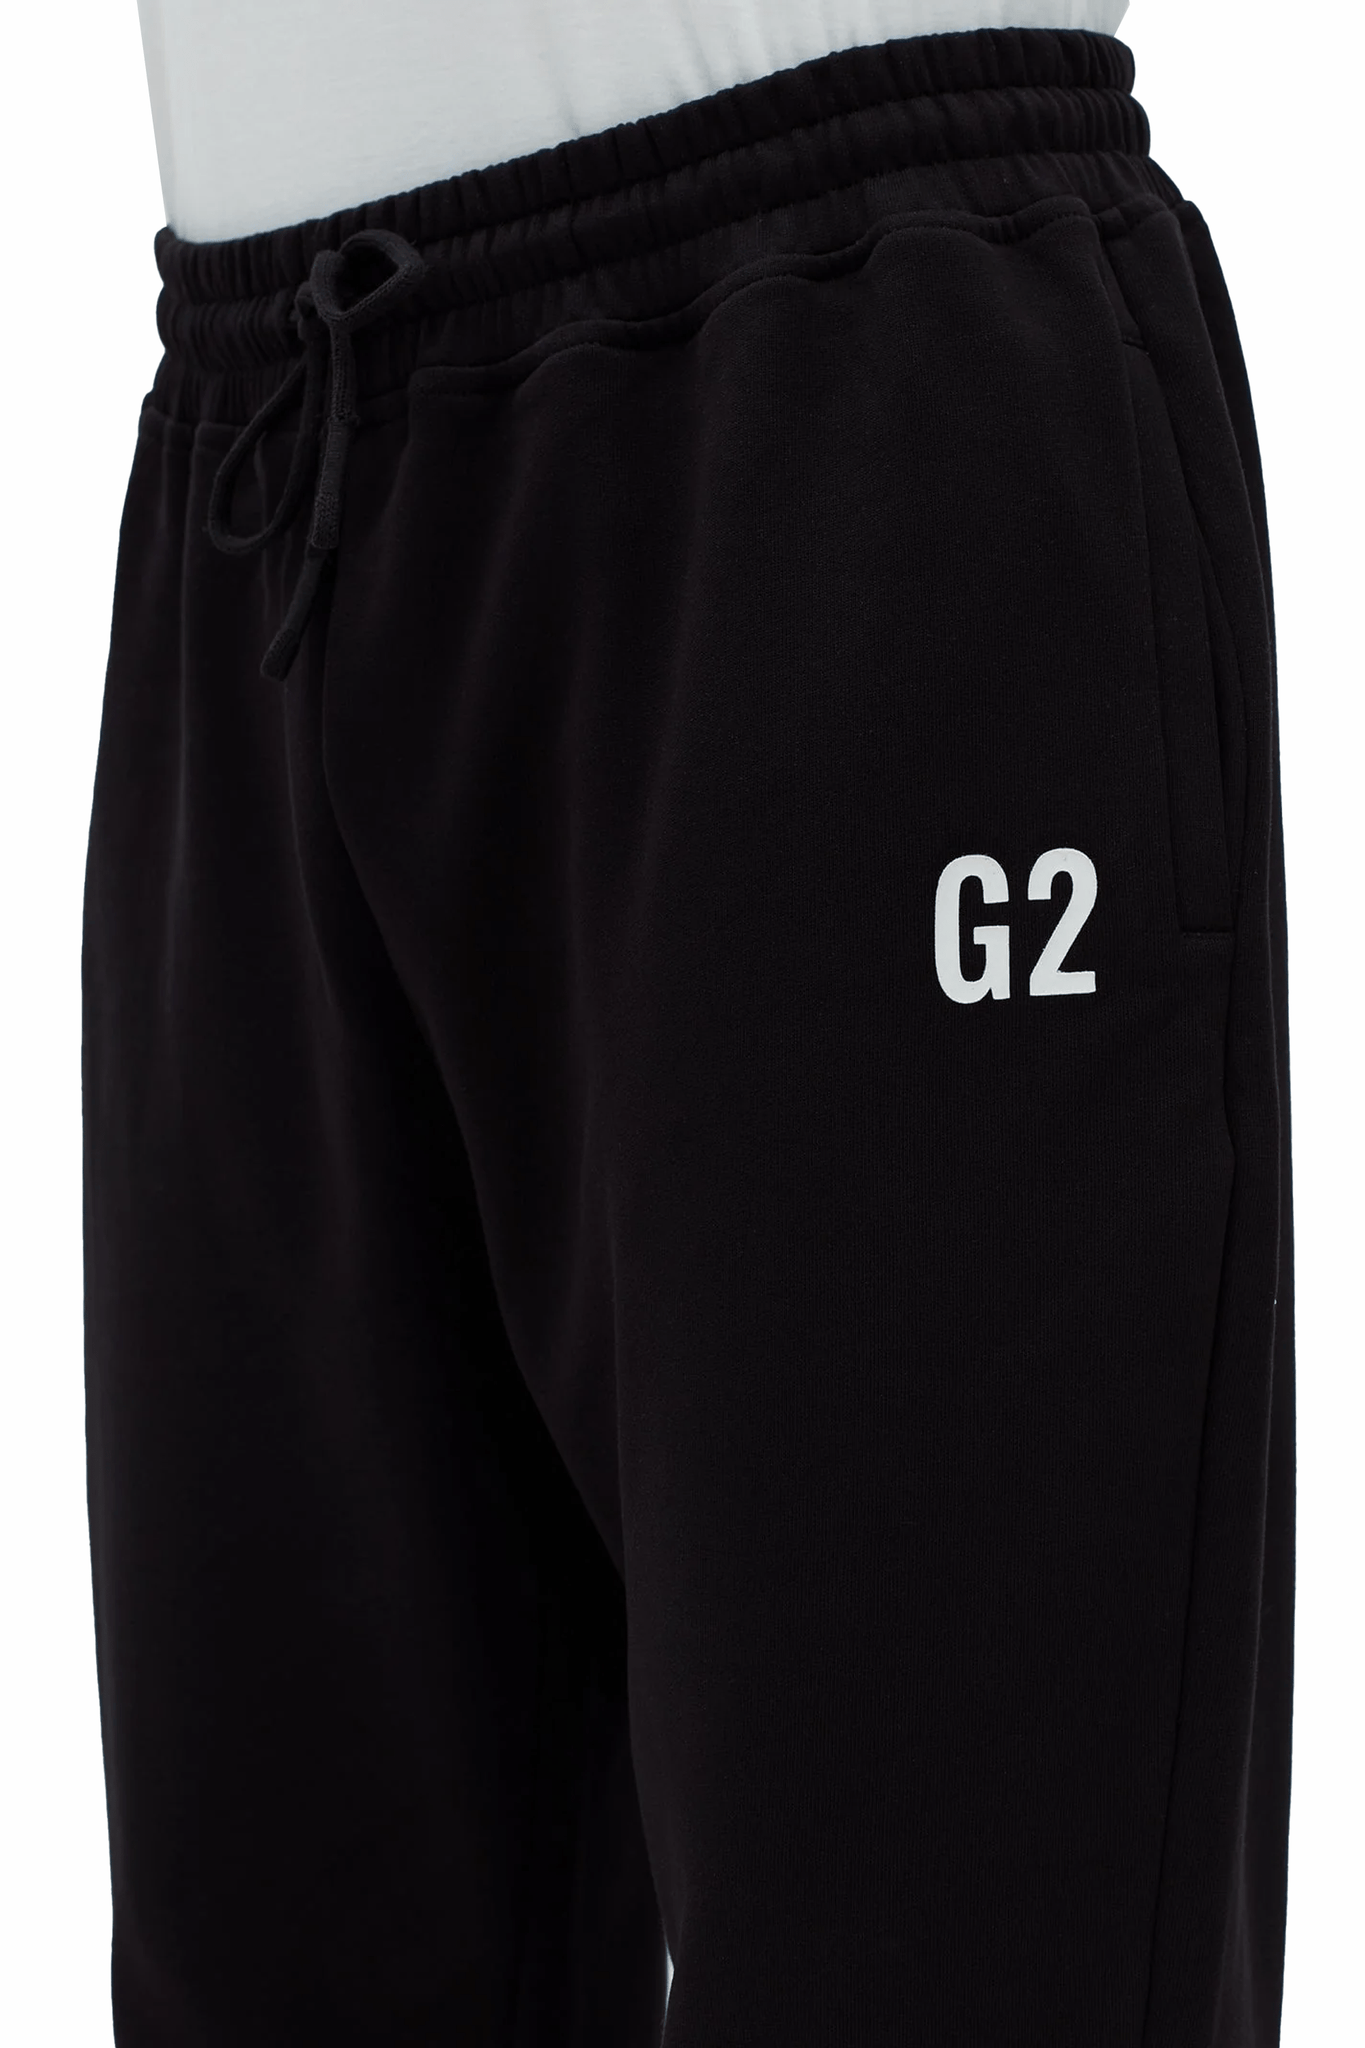 G2 x LB Black Sweatpants